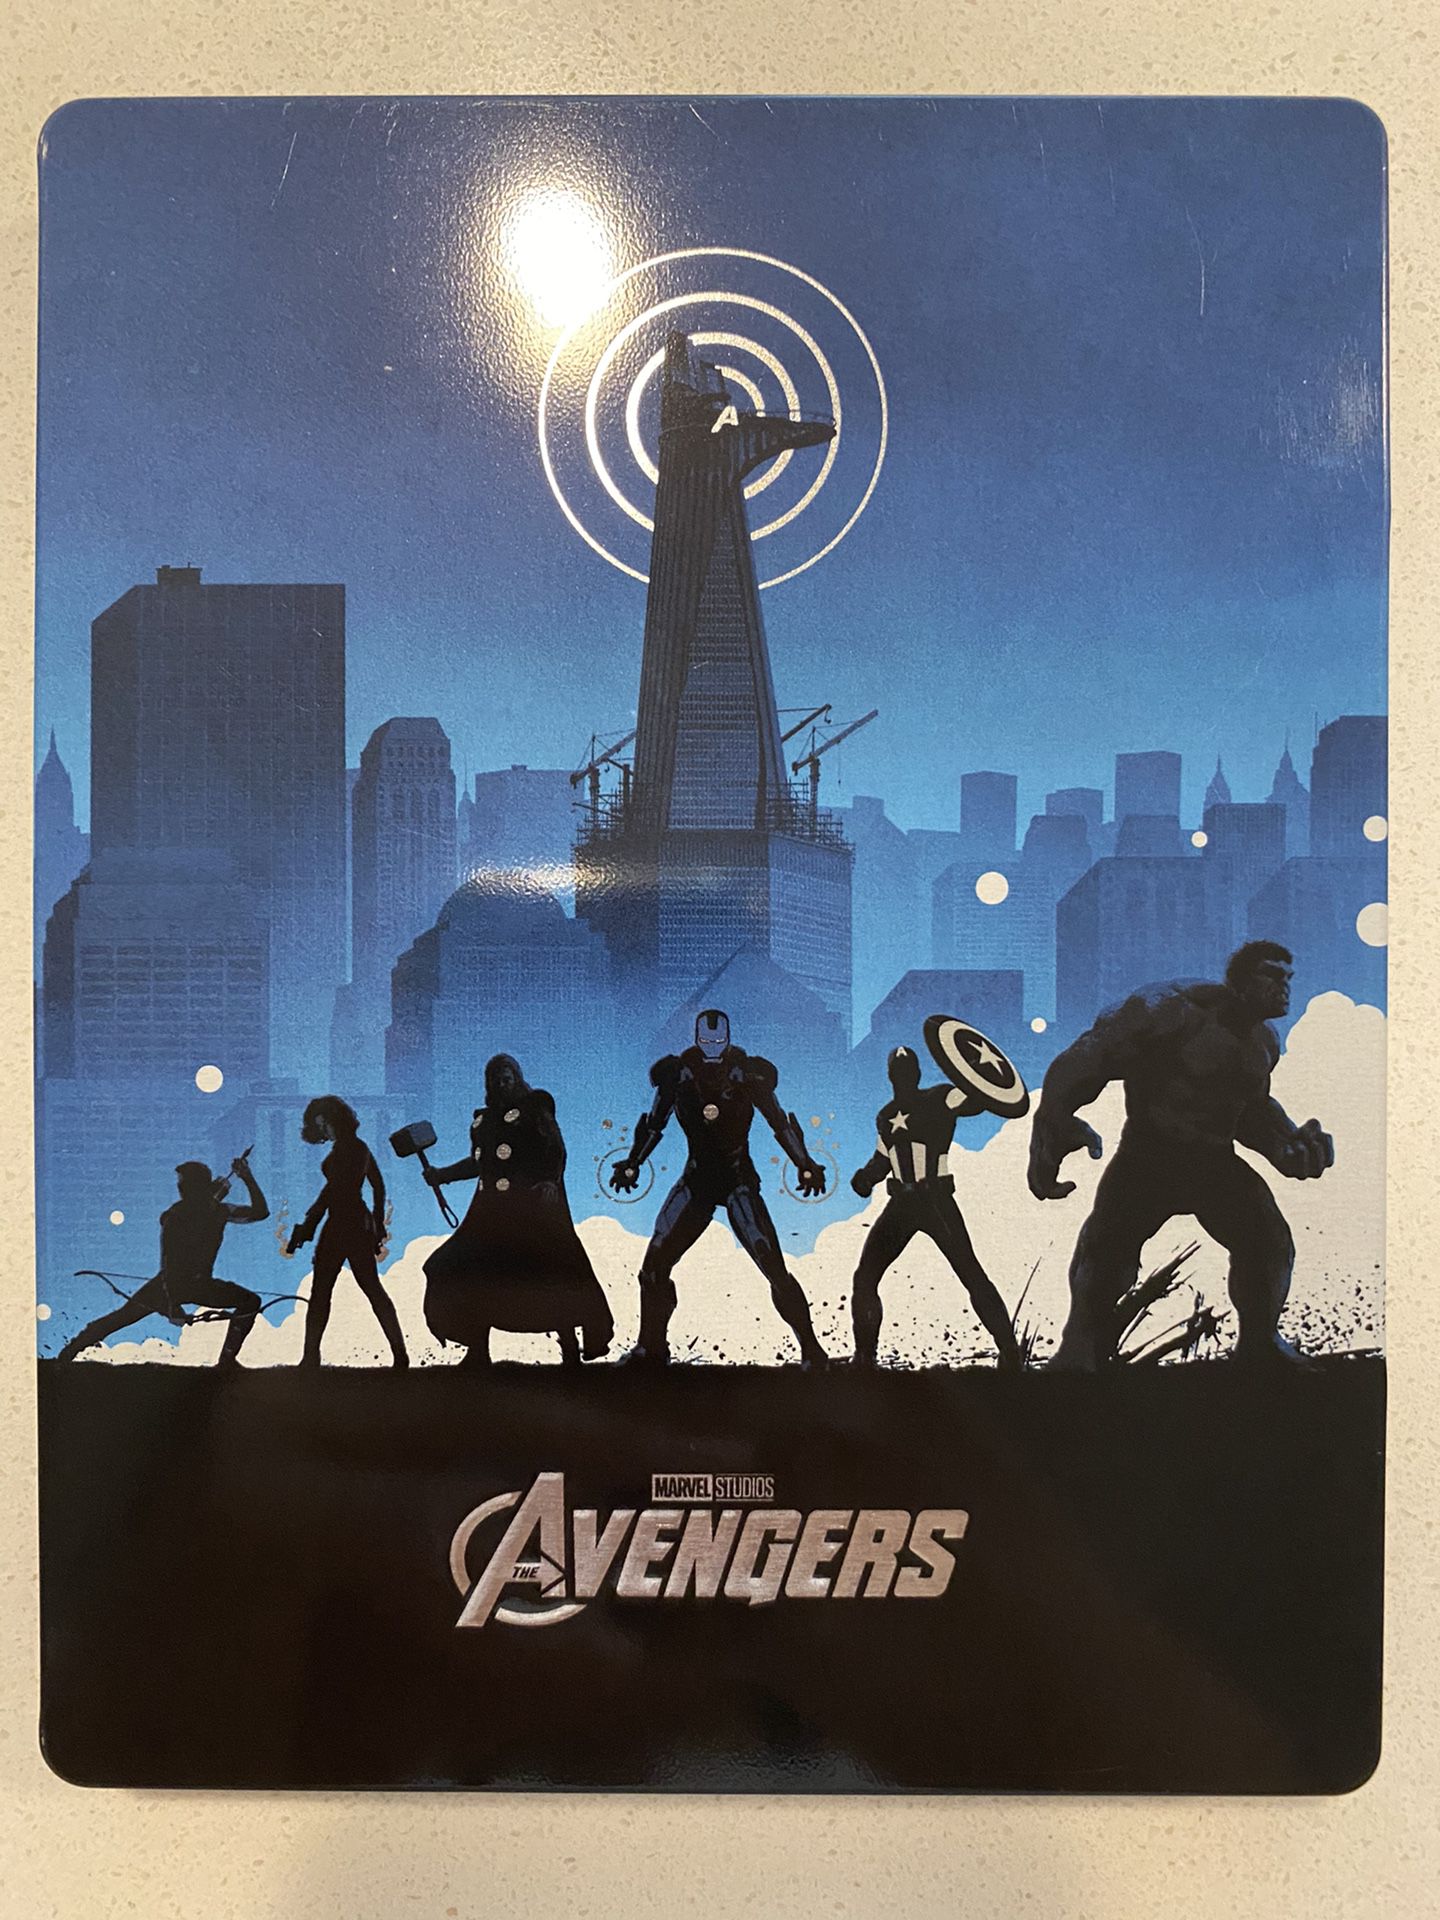 Avengers(2012) Bluray Steelbook -please read